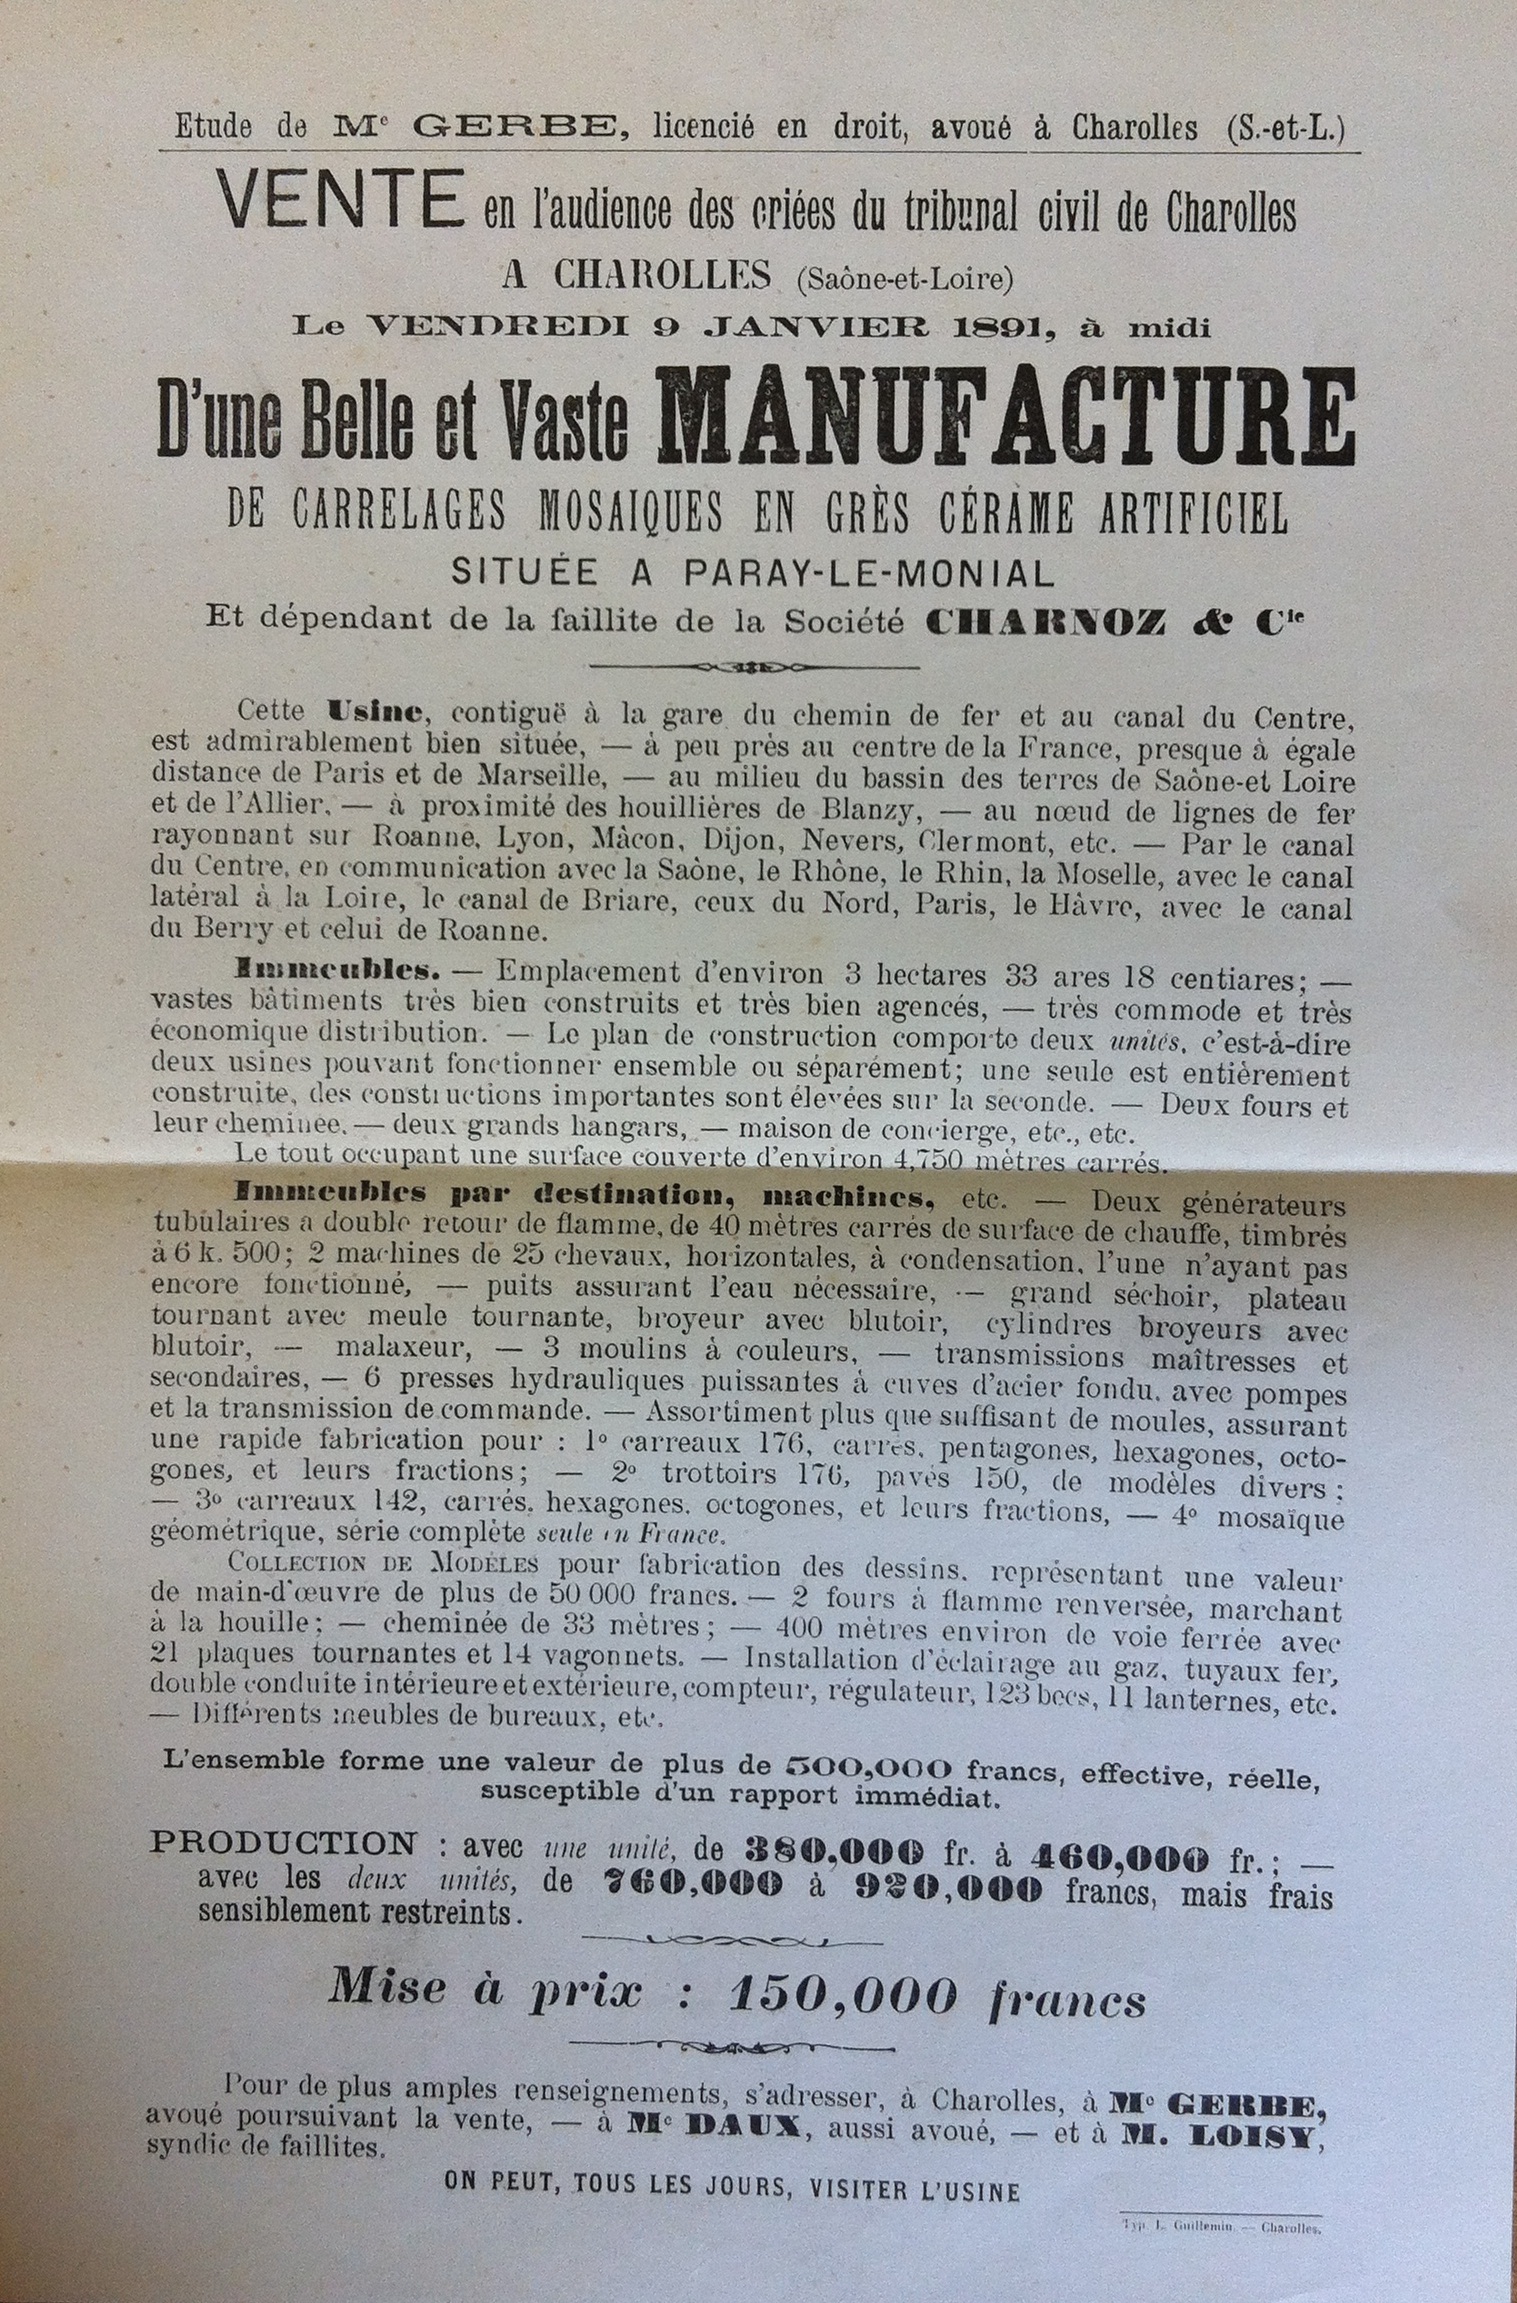 Doc. 4 - Affiche pour la vente de l'usine, 1890